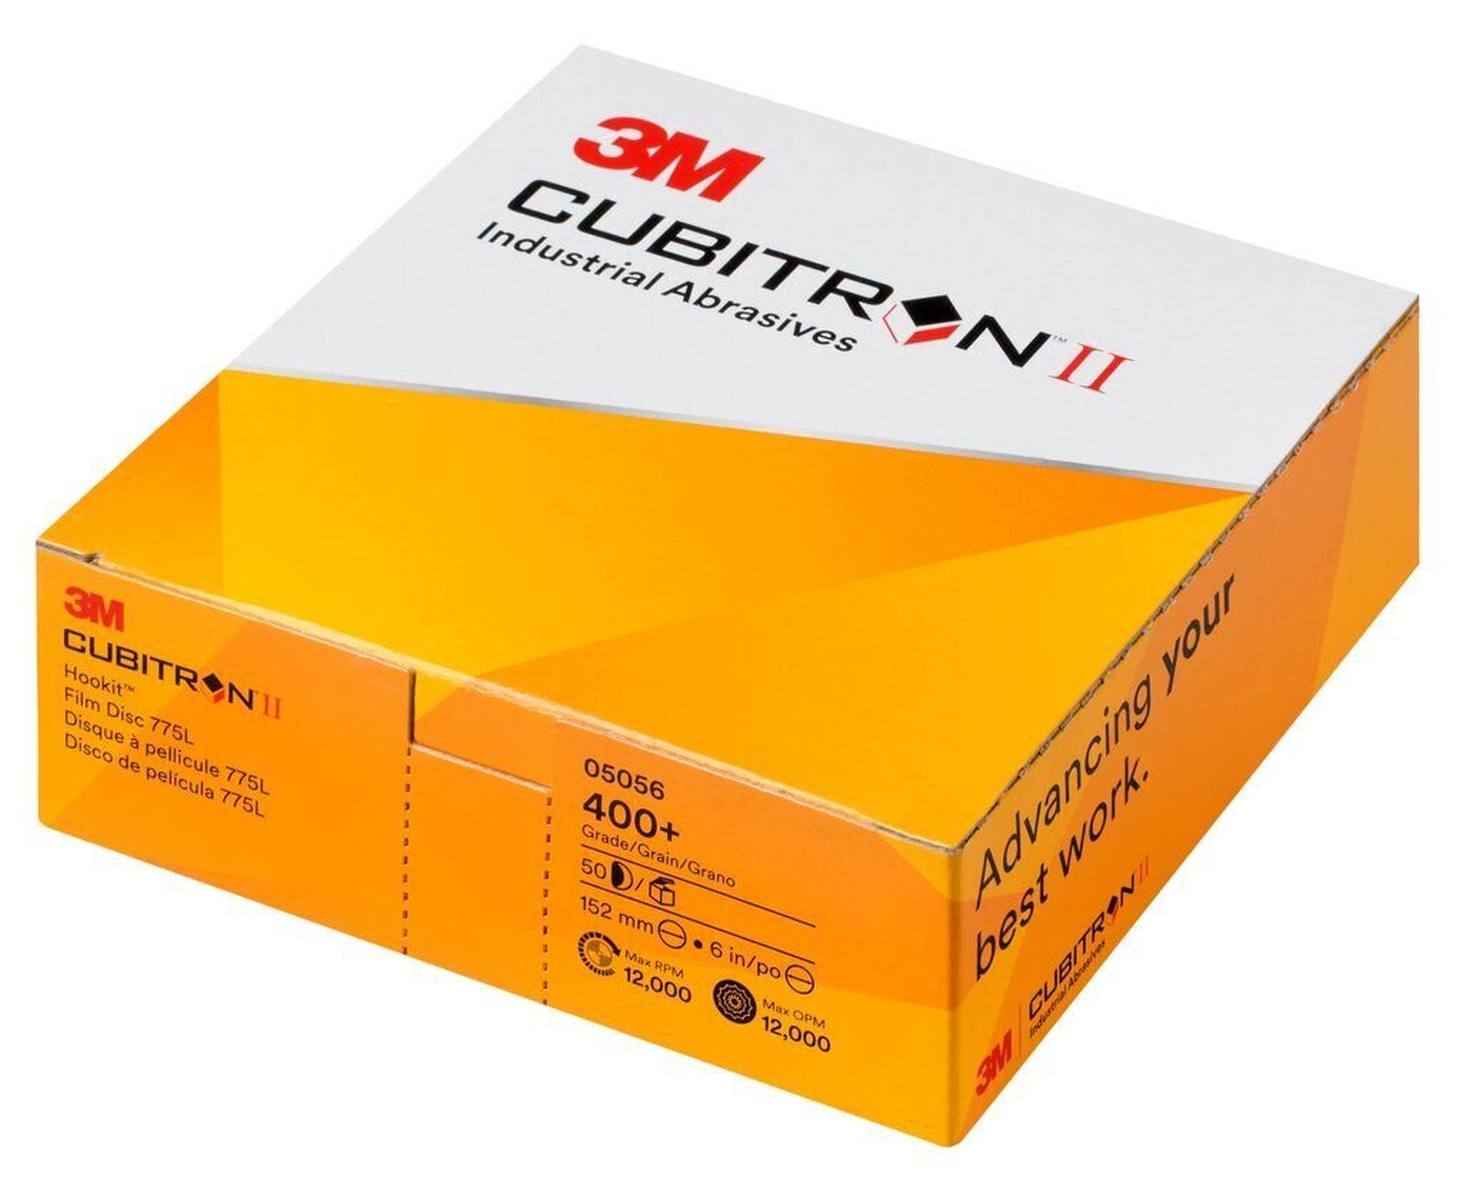 3M Cubitron II Hookit Disque pour film 775L, 150 mm, 400 , multihole #05059